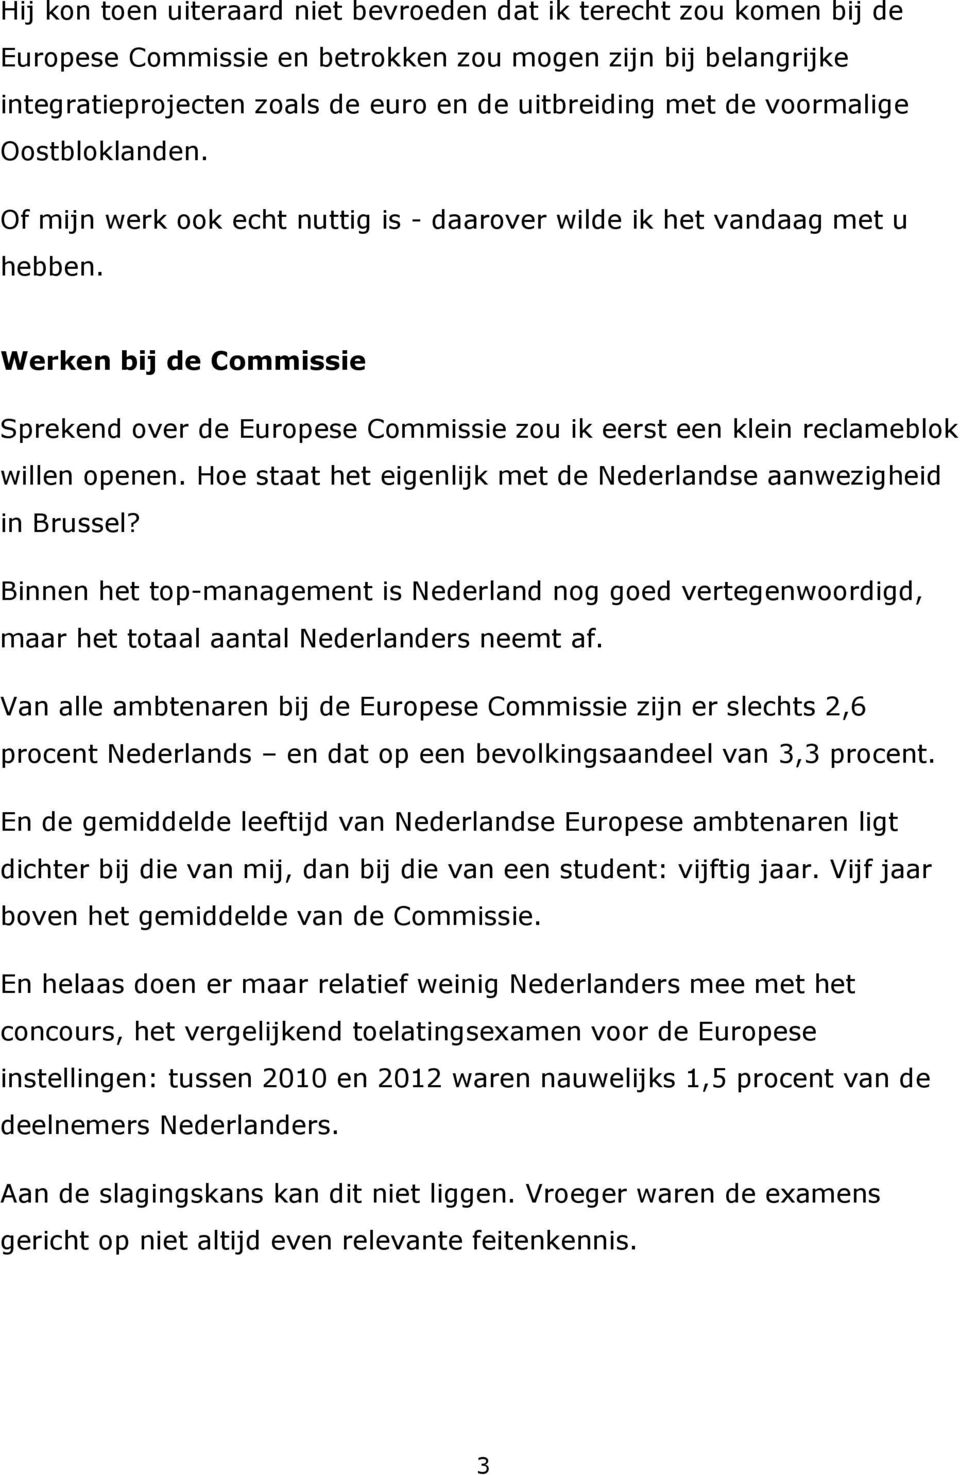 Werken bij de Commissie Sprekend over de Europese Commissie zou ik eerst een klein reclameblok willen openen. Hoe staat het eigenlijk met de Nederlandse aanwezigheid in Brussel?